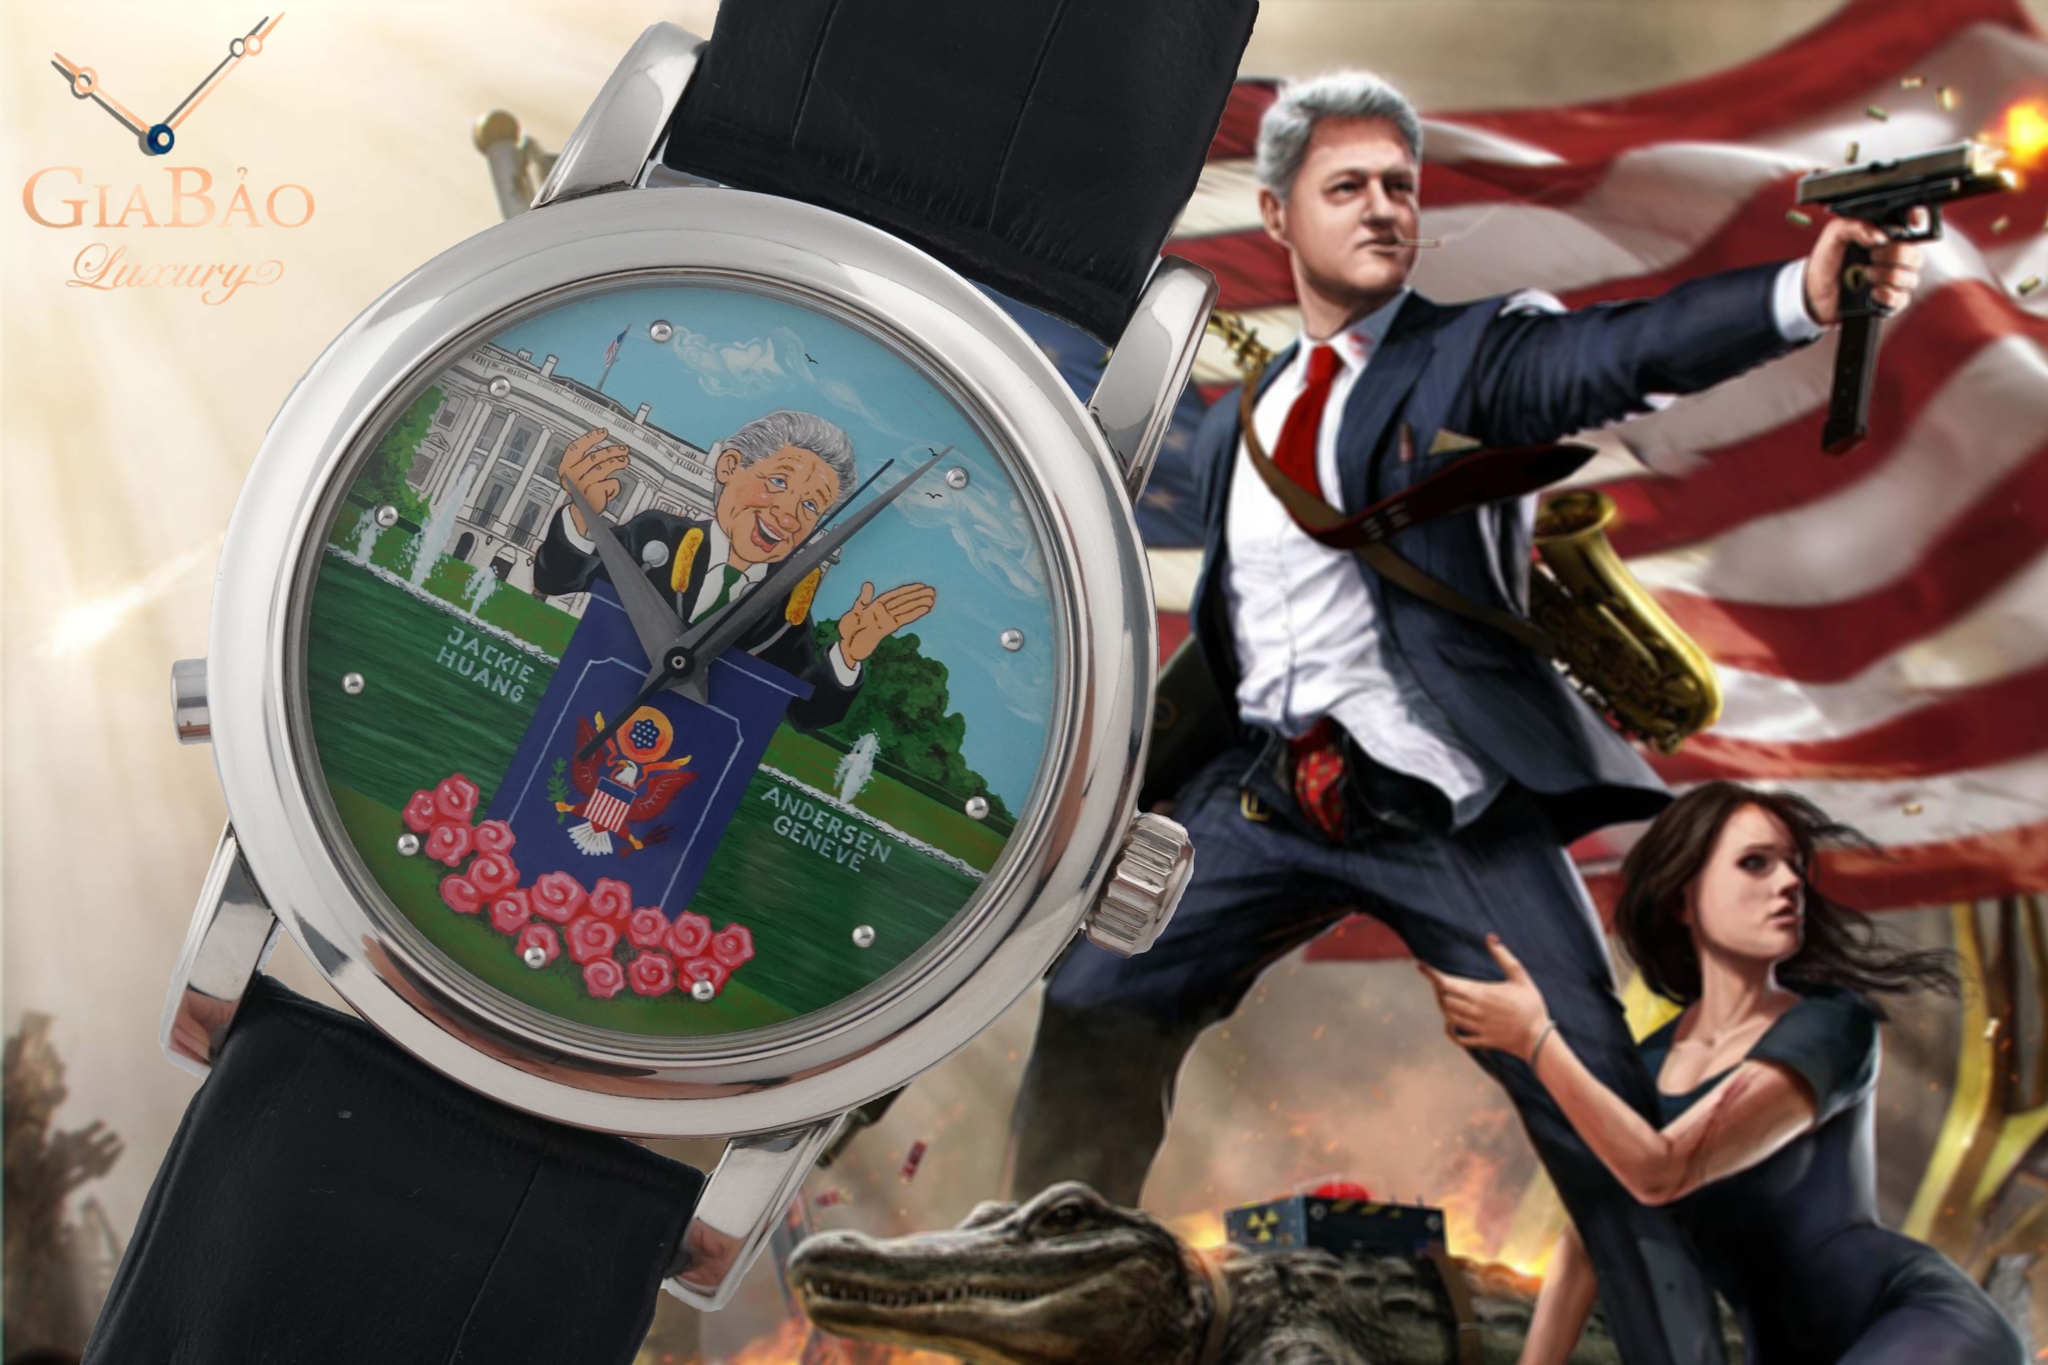 Review đồng hồ Svend Andersen - Sự hoan lạc của Tổng thống